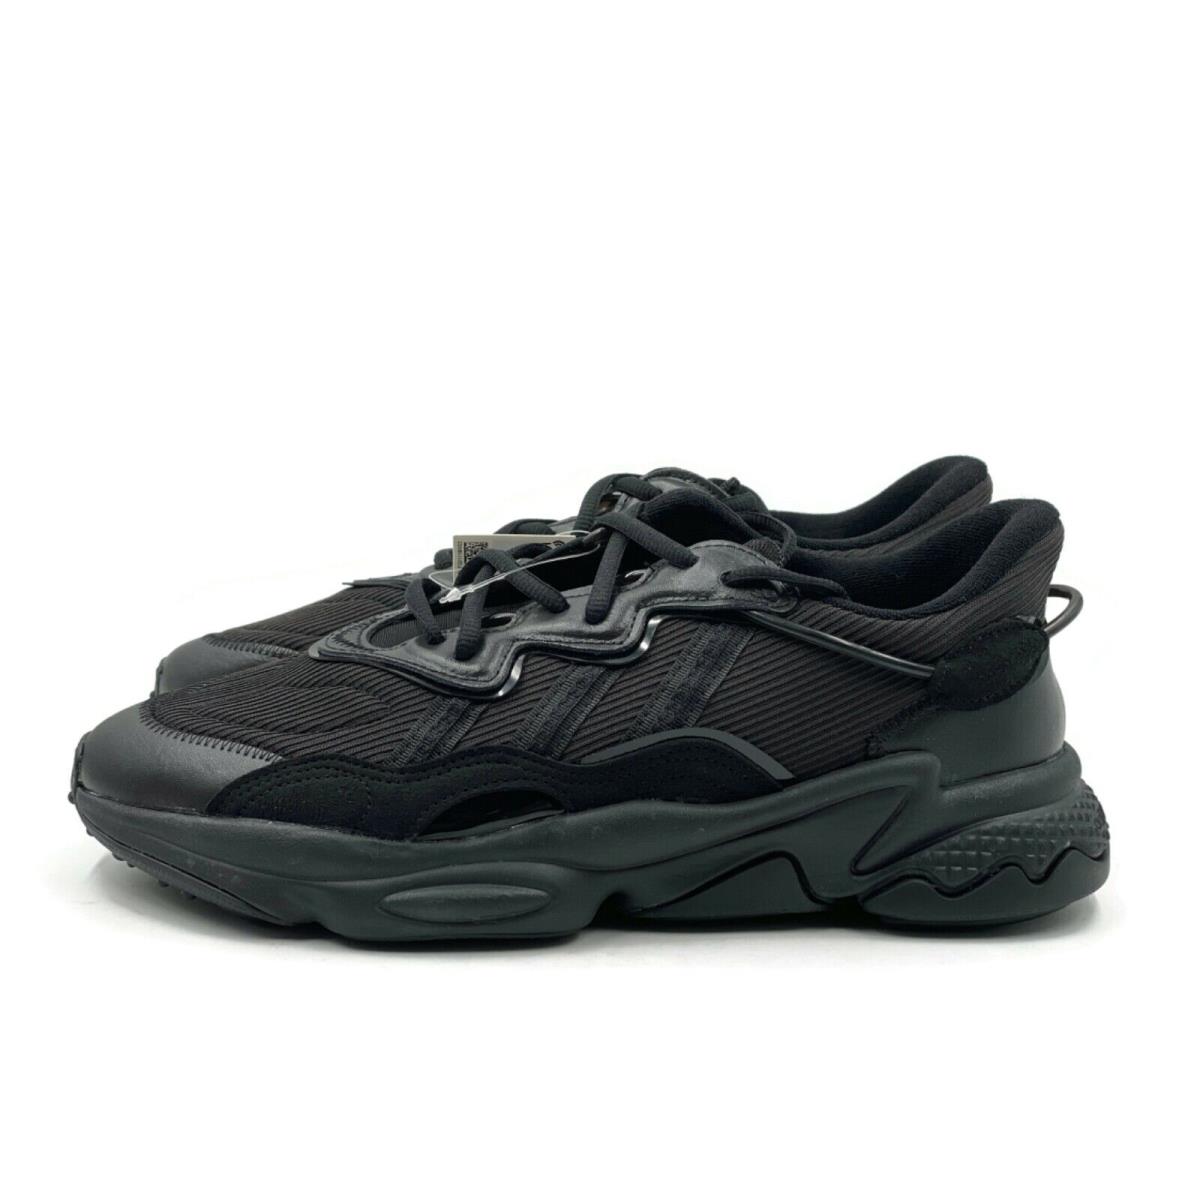 Adidas shoes Ozweego - Black 10